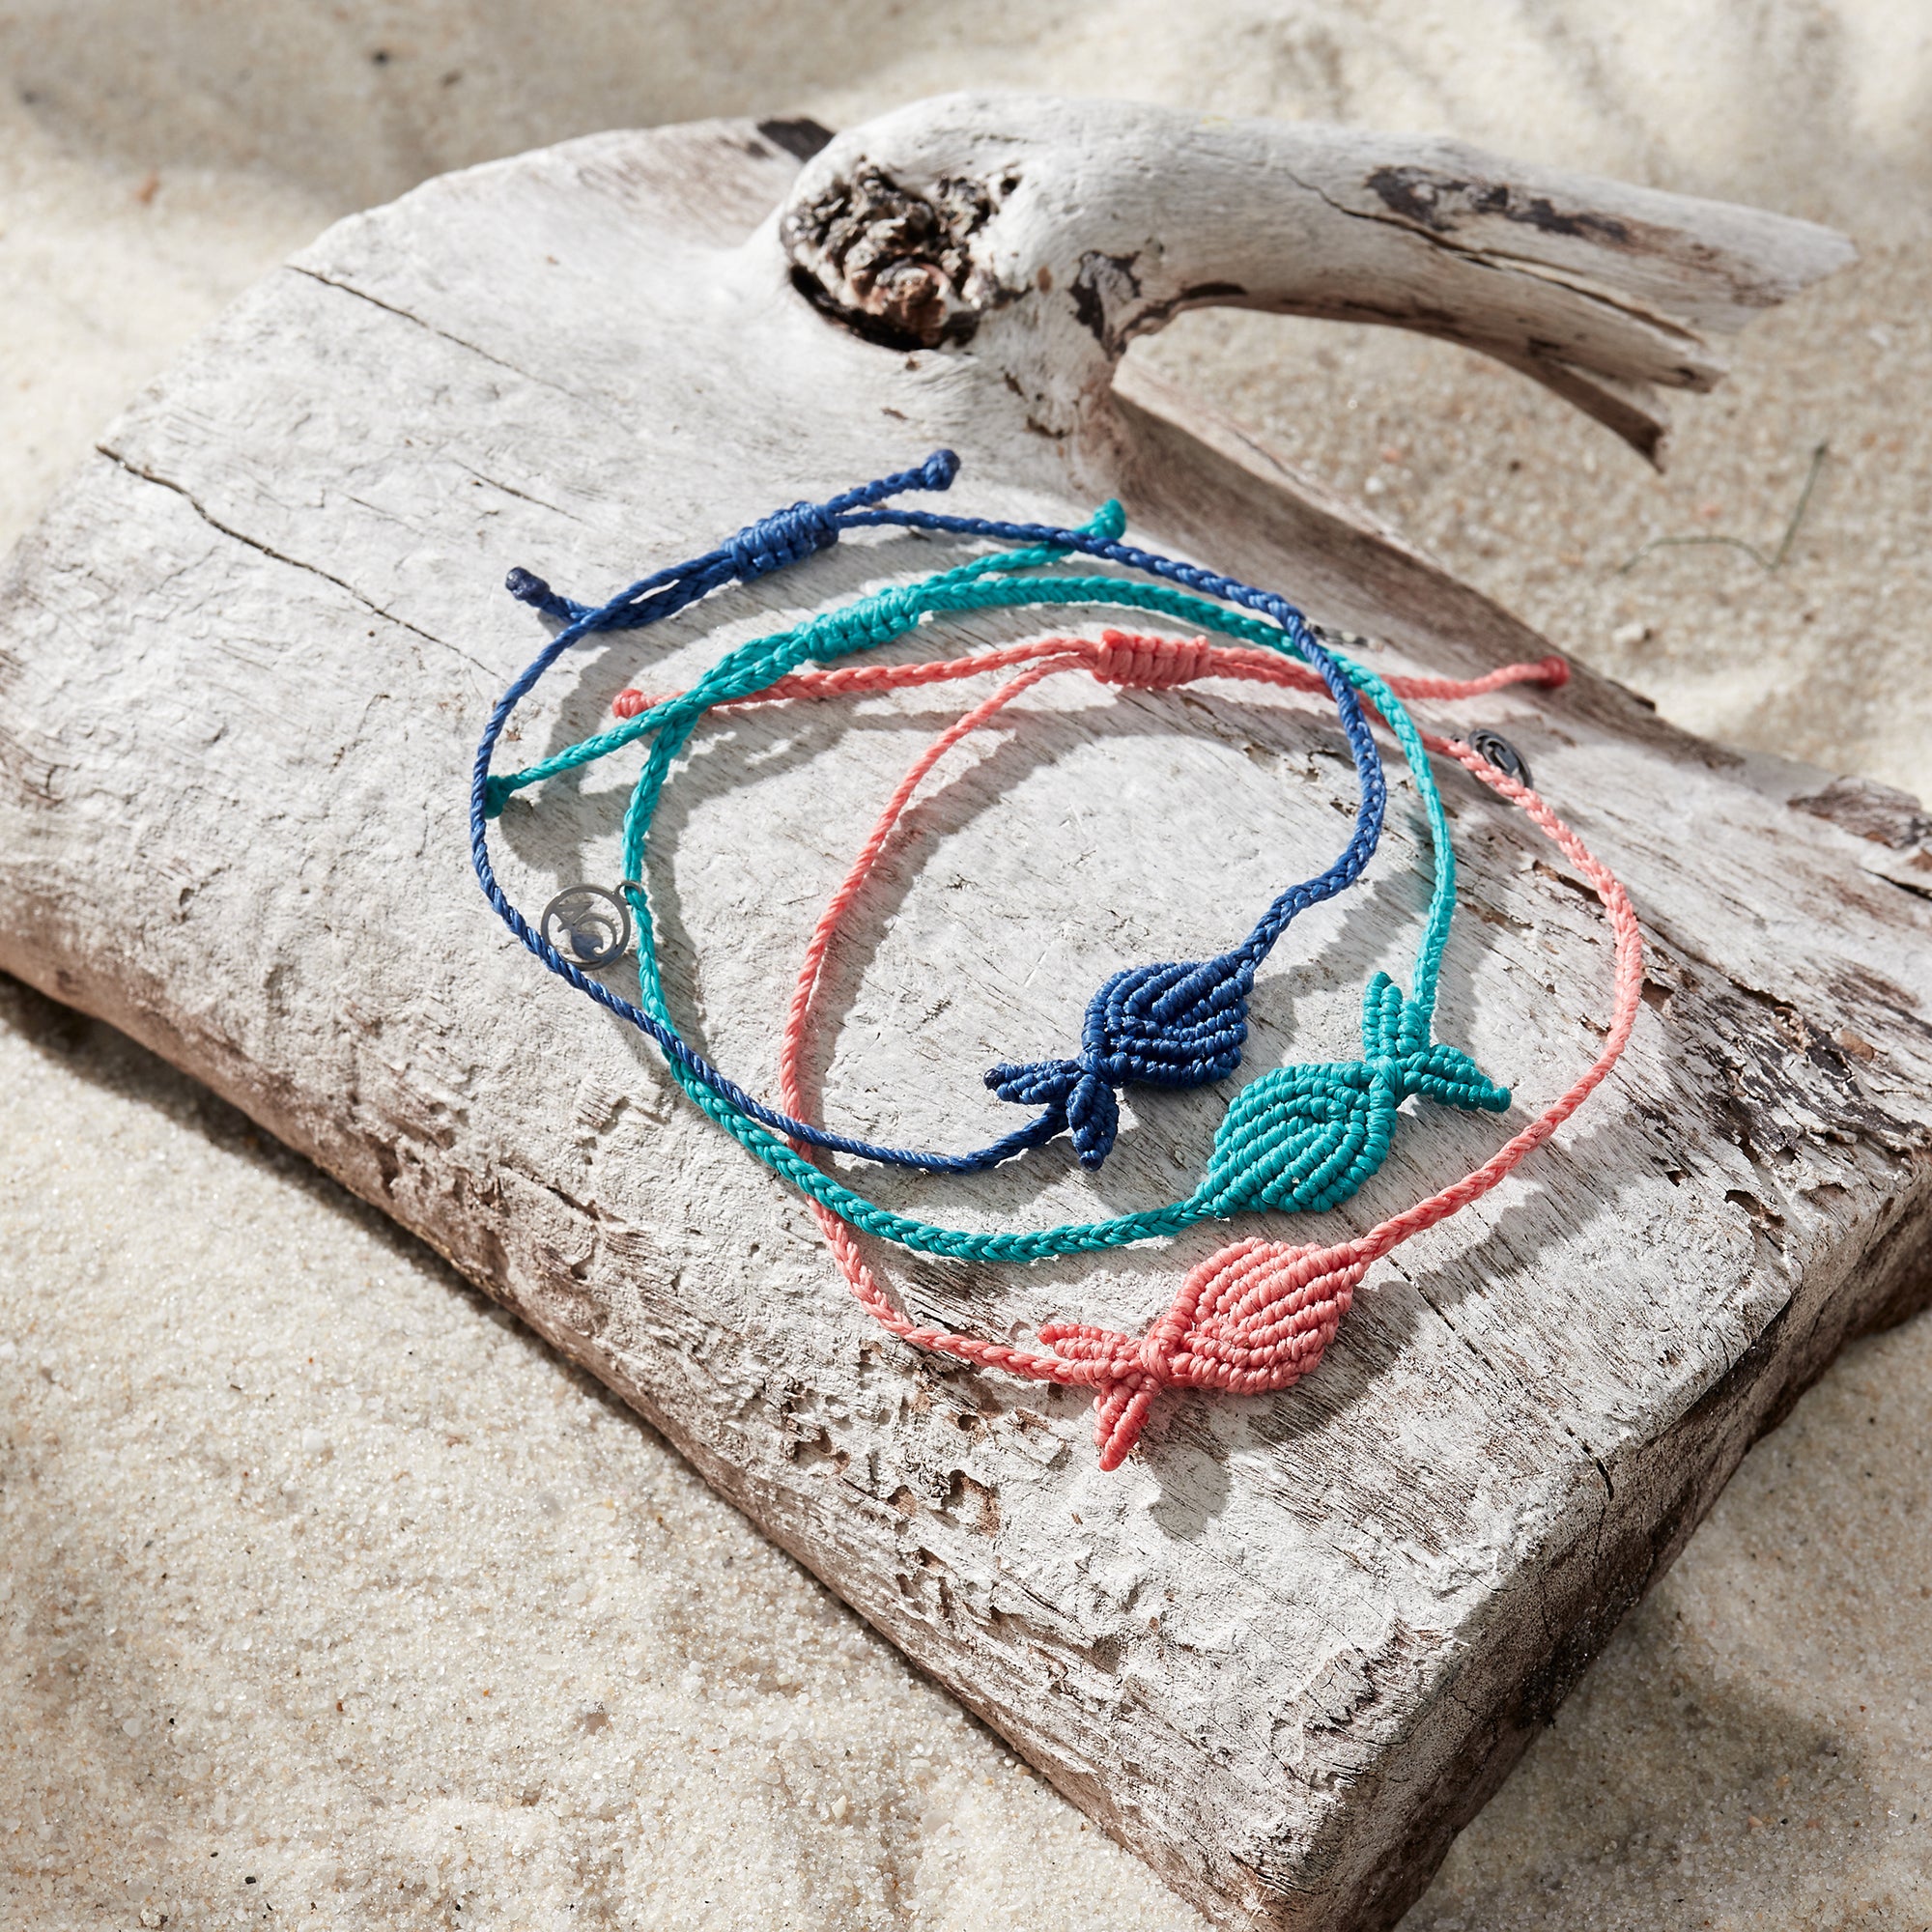 4 Ocean Beaded Bracelets - the Best of Fort Myers Beach